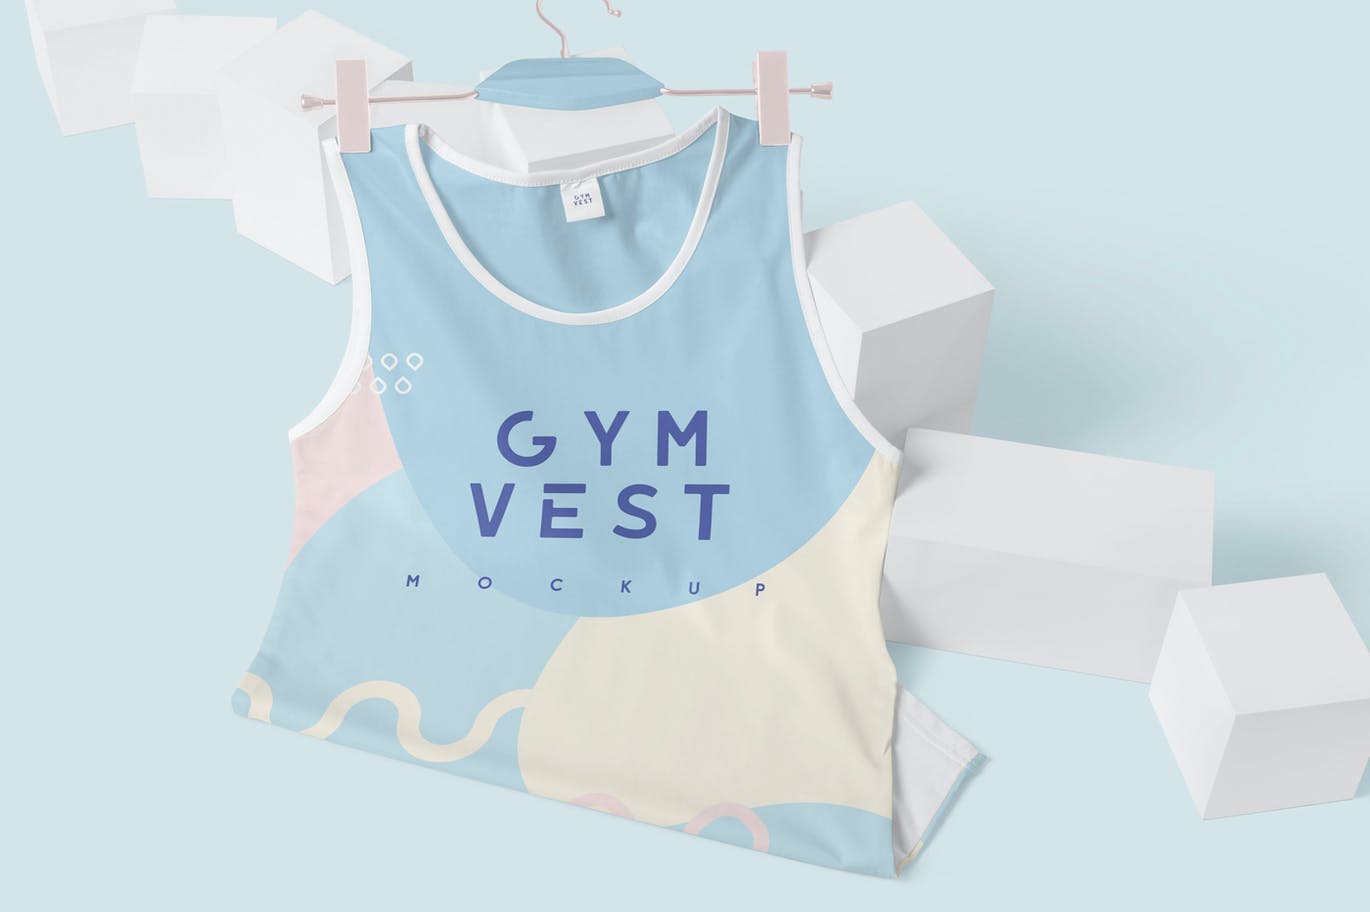 运动背心印花图案设计样机 Sleeveless Gym Vest Mockups设计素材模板